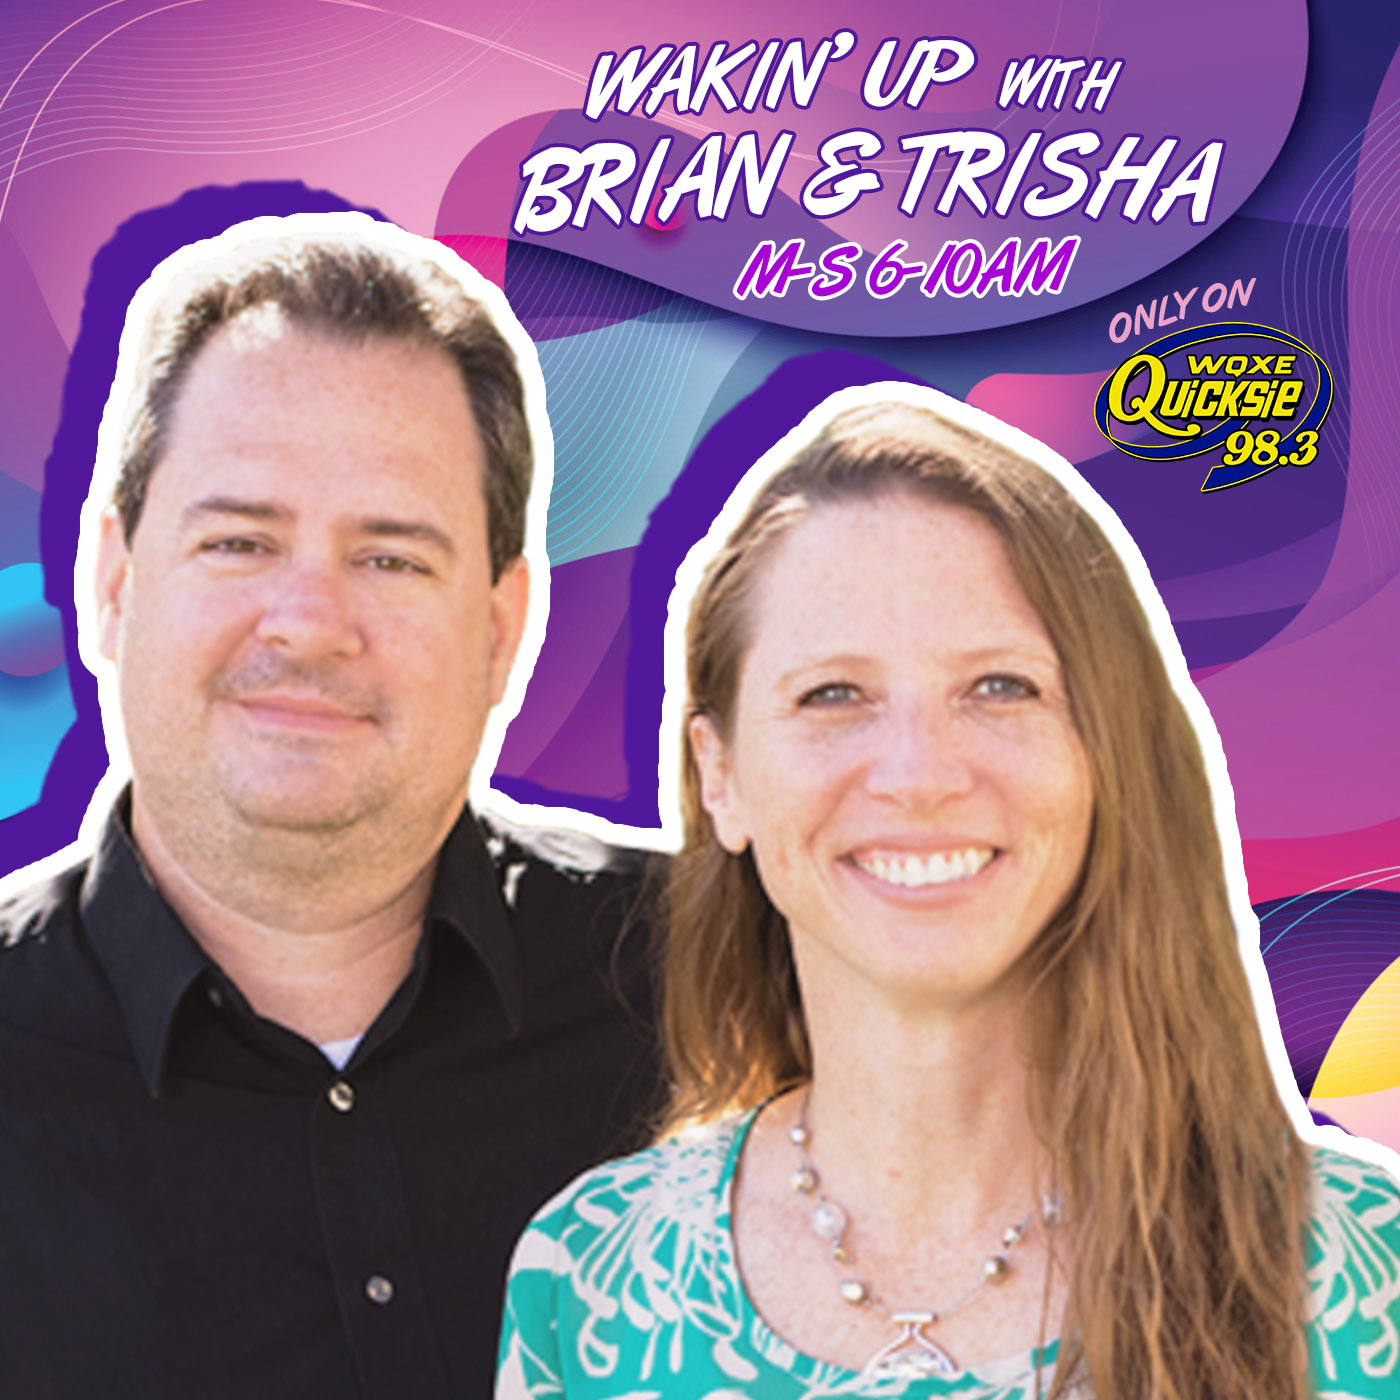 Brian and Trisha – Quicksie 98.3